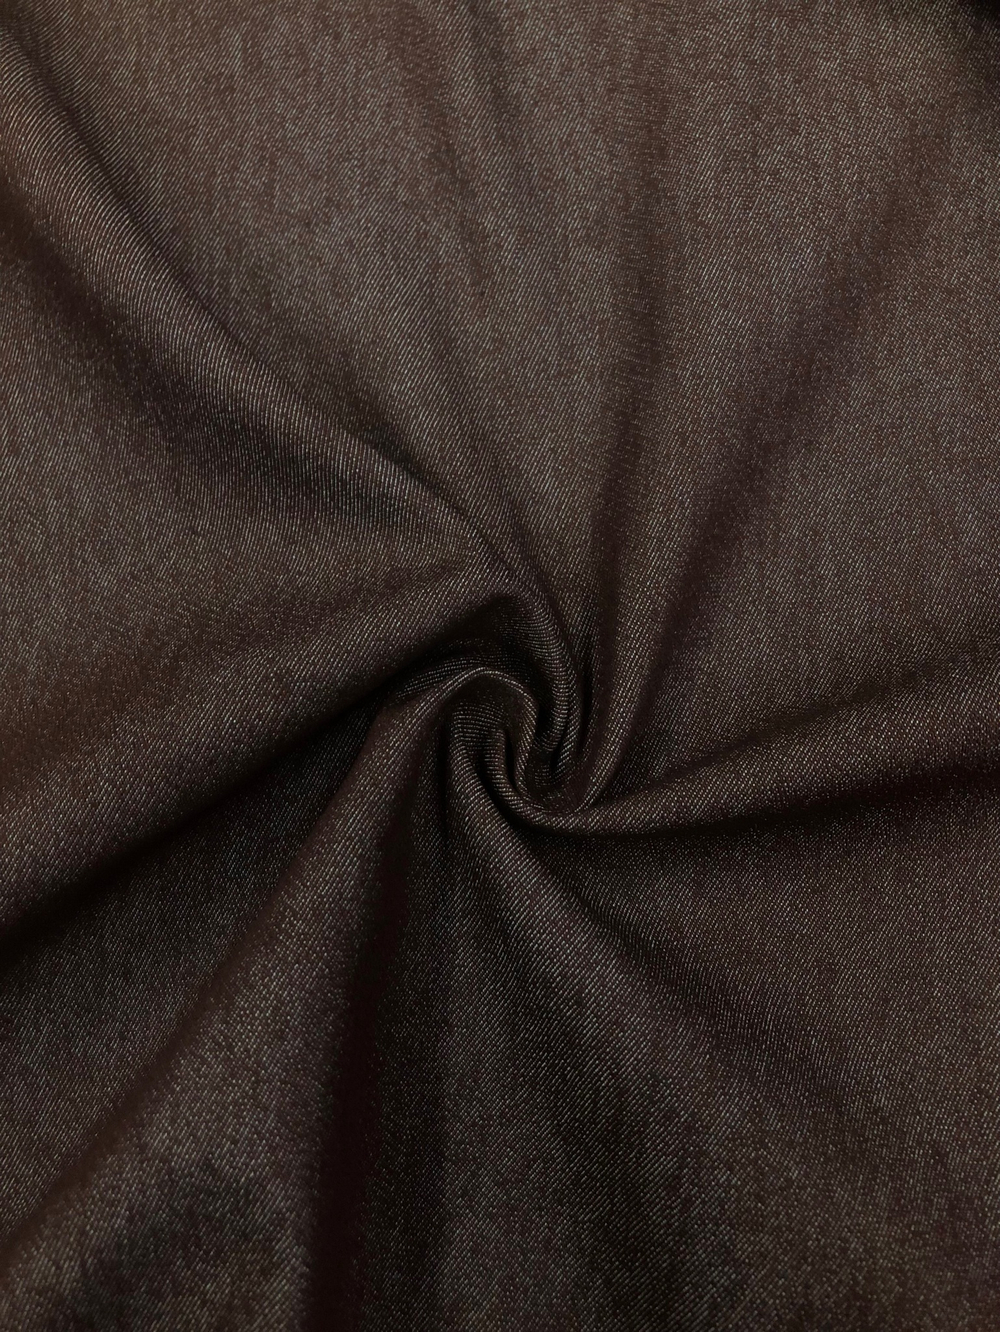 Ткань Джинса коричневая, арт. 327883